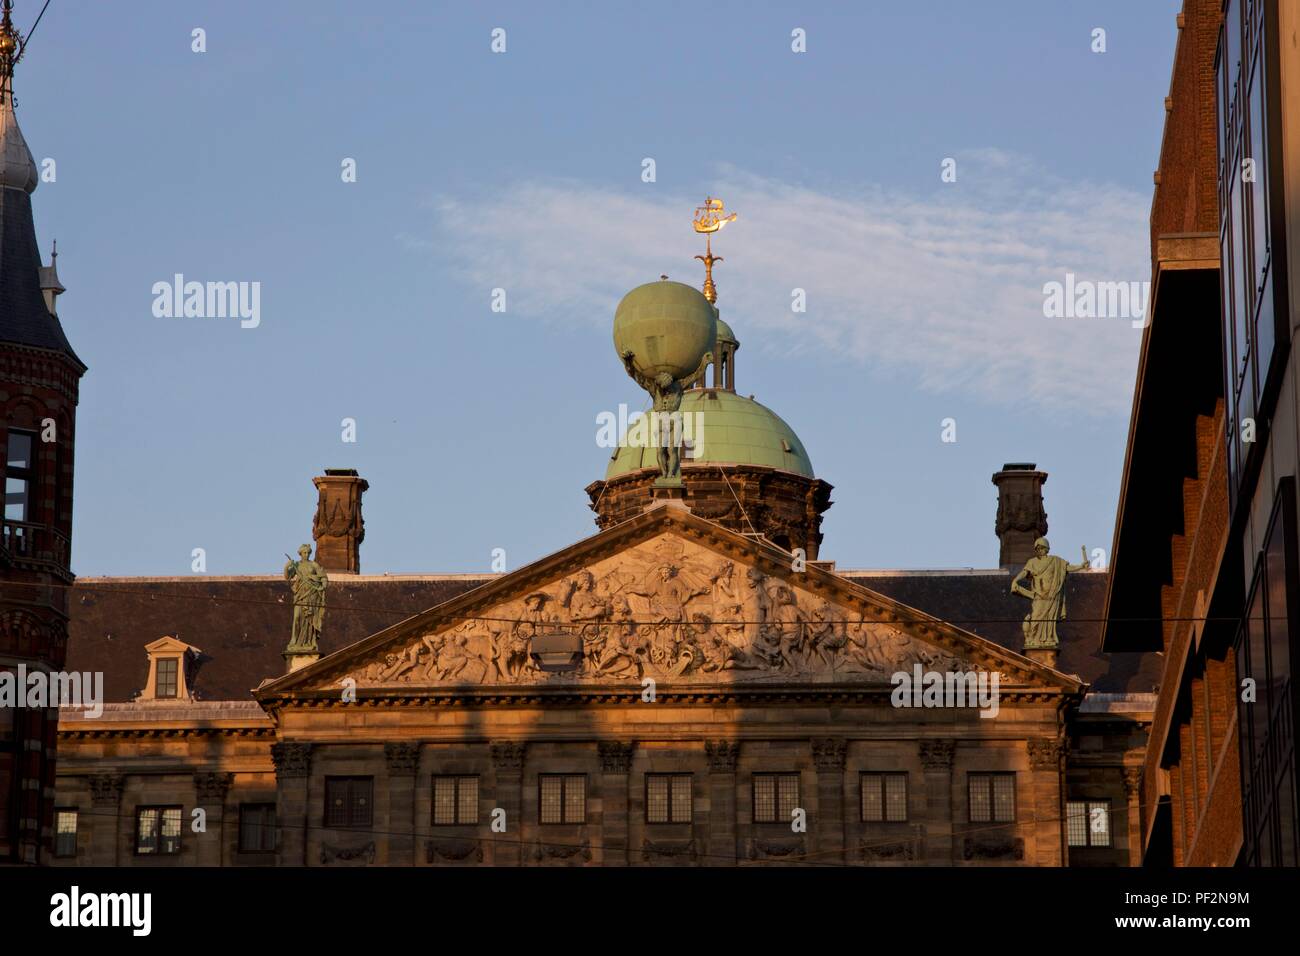 Statua di Atlante che regge il globo o il mondo sulle sue spalle, nella luce del tramonto, sulla sommità del Palazzo Reale di Amsterdam in Piazza Dam Foto Stock